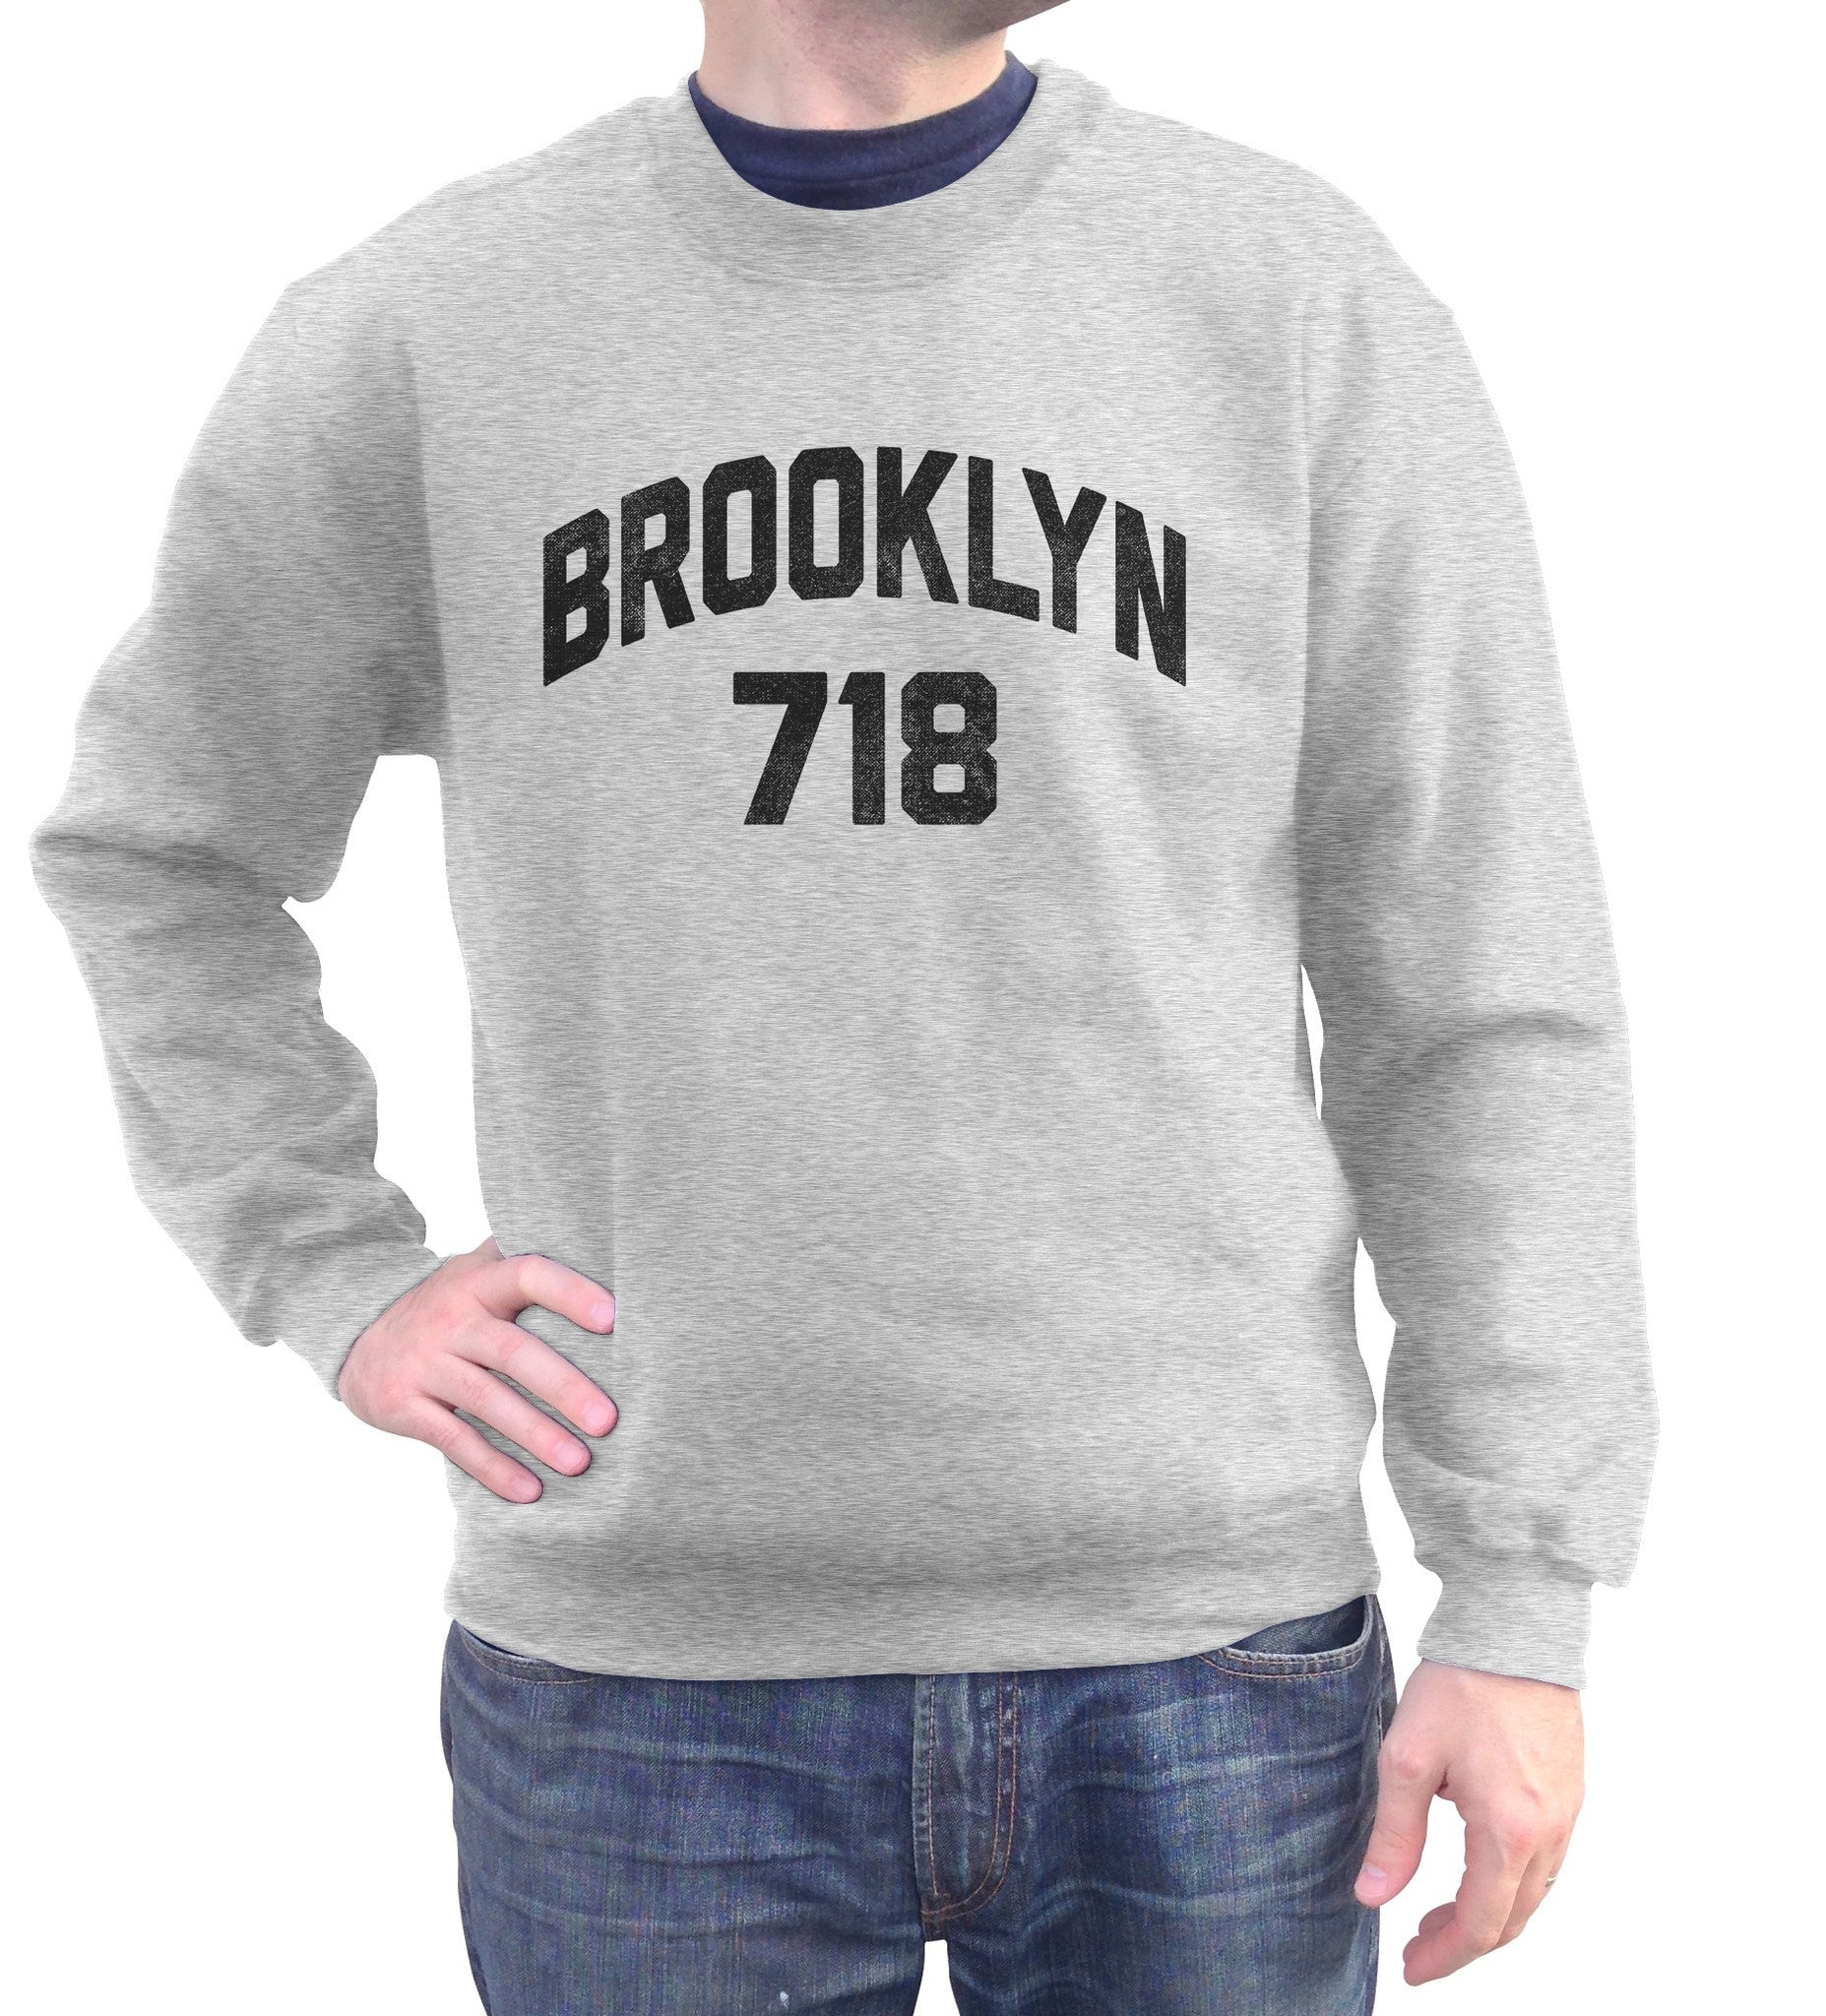 Unisex Brooklyn 718 Area Code Sweatshirt